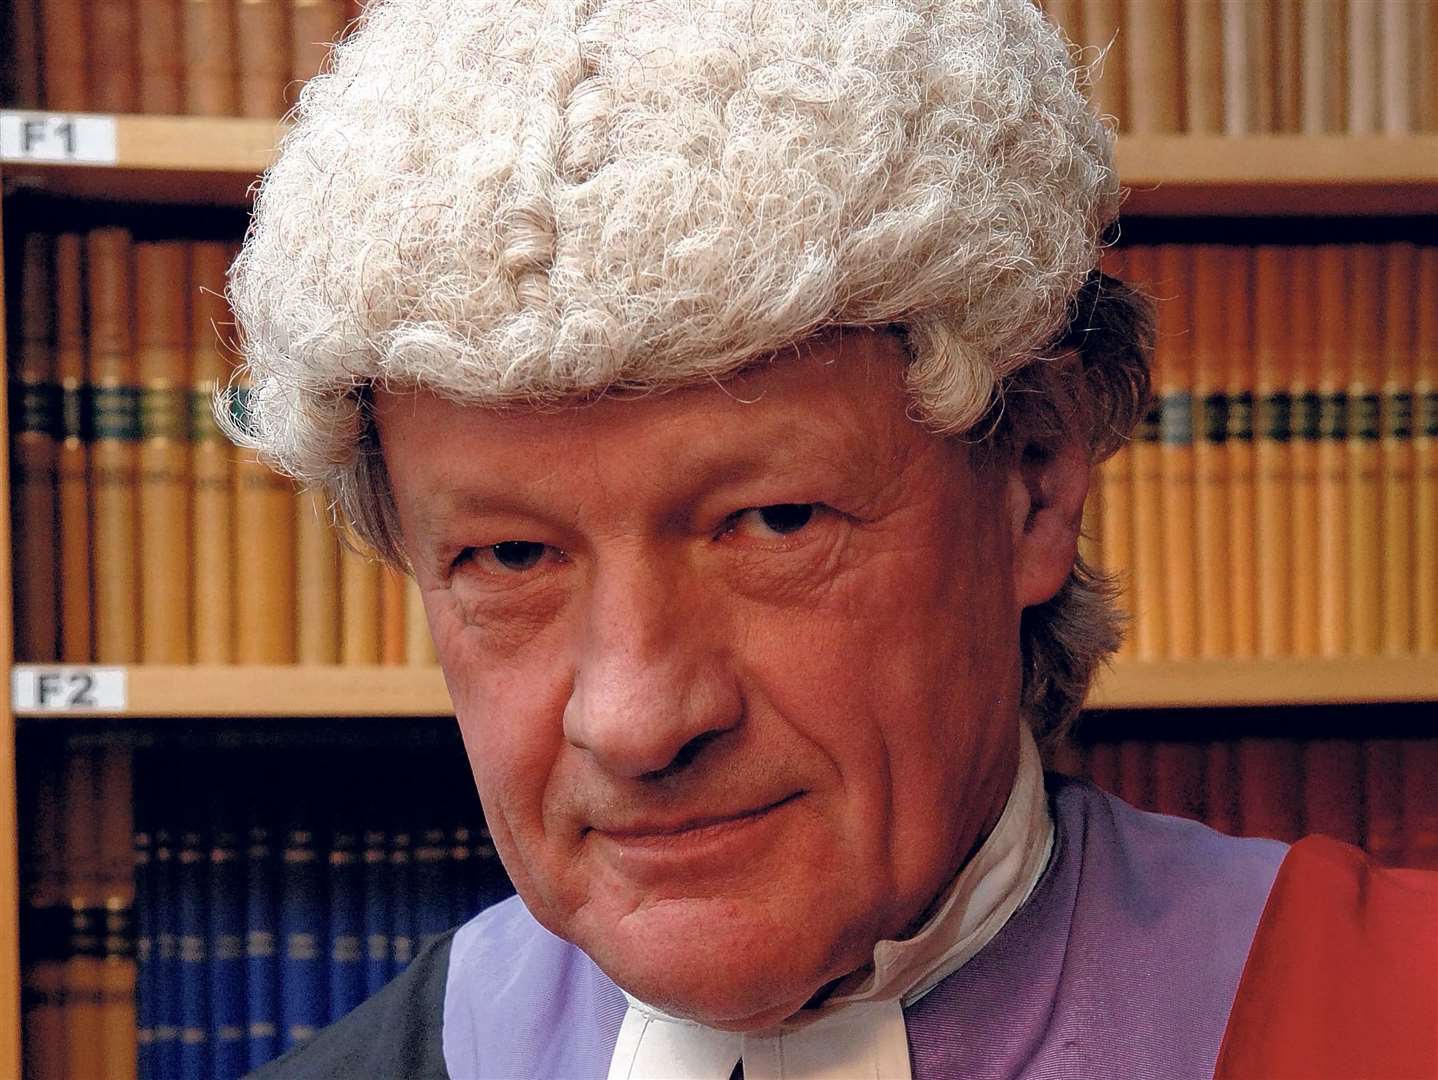 Judge James O'Mahony